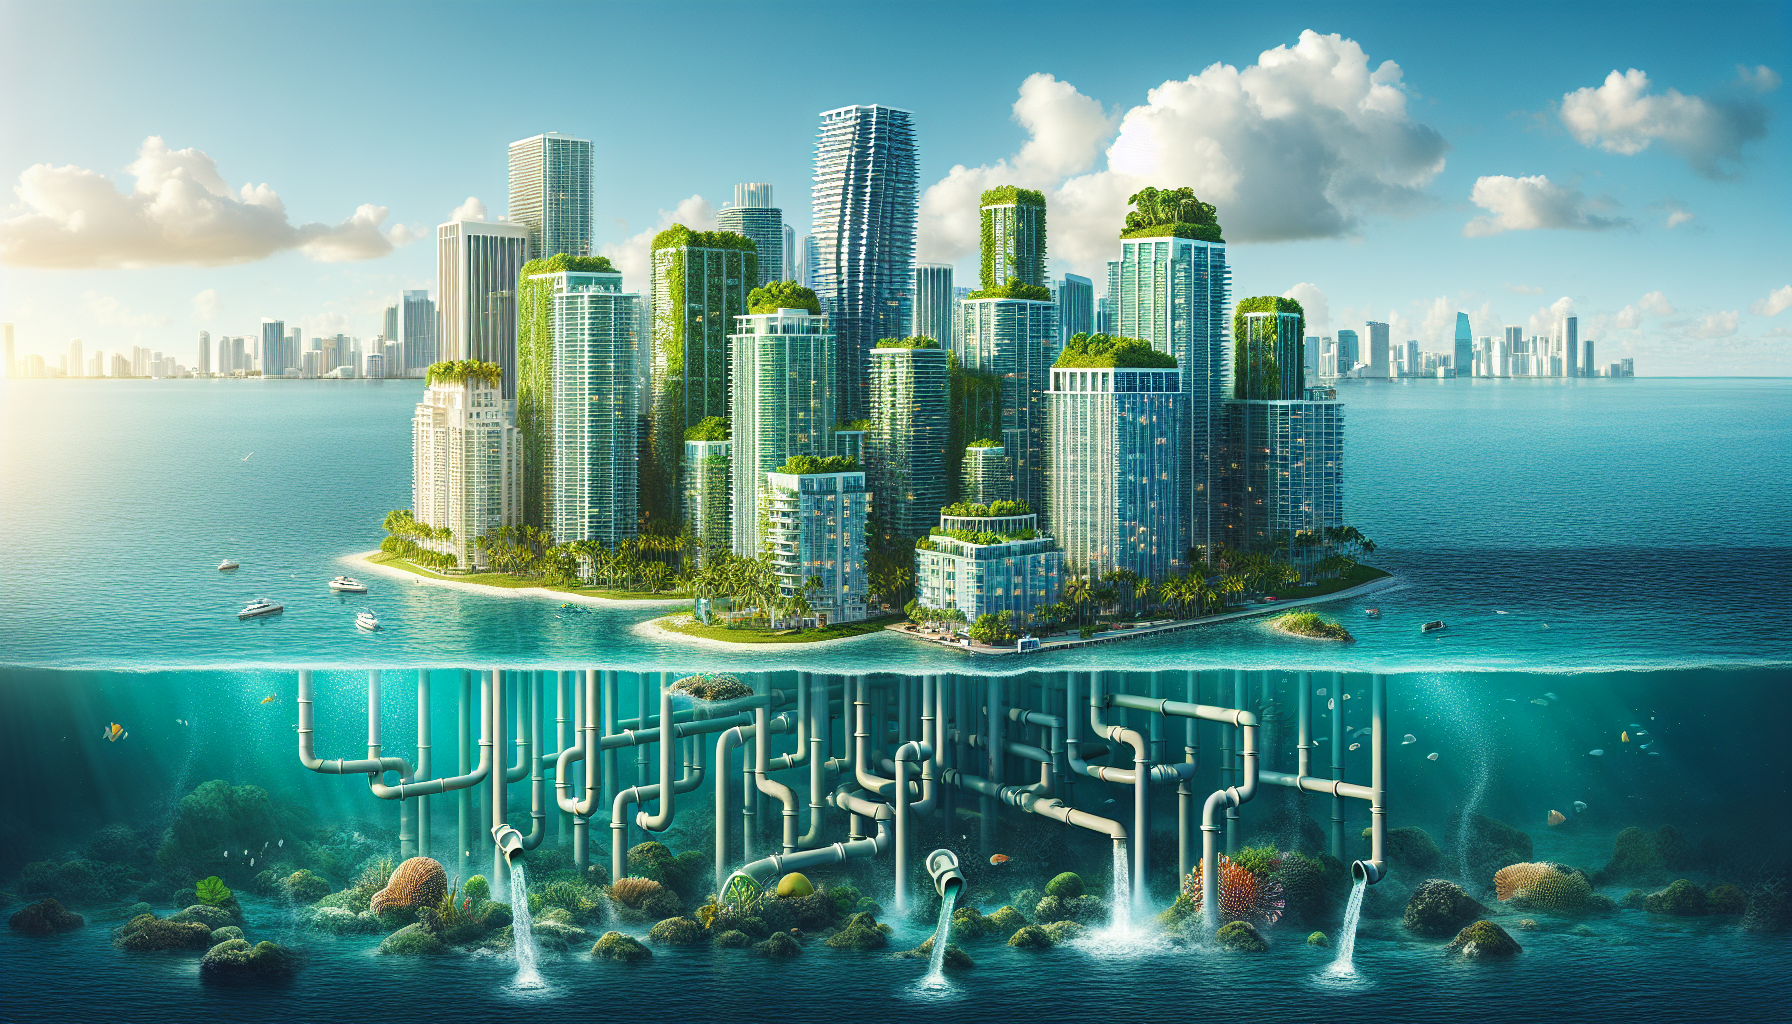 El horizonte de la ciudad con el concepto de conservación del medio ambiente